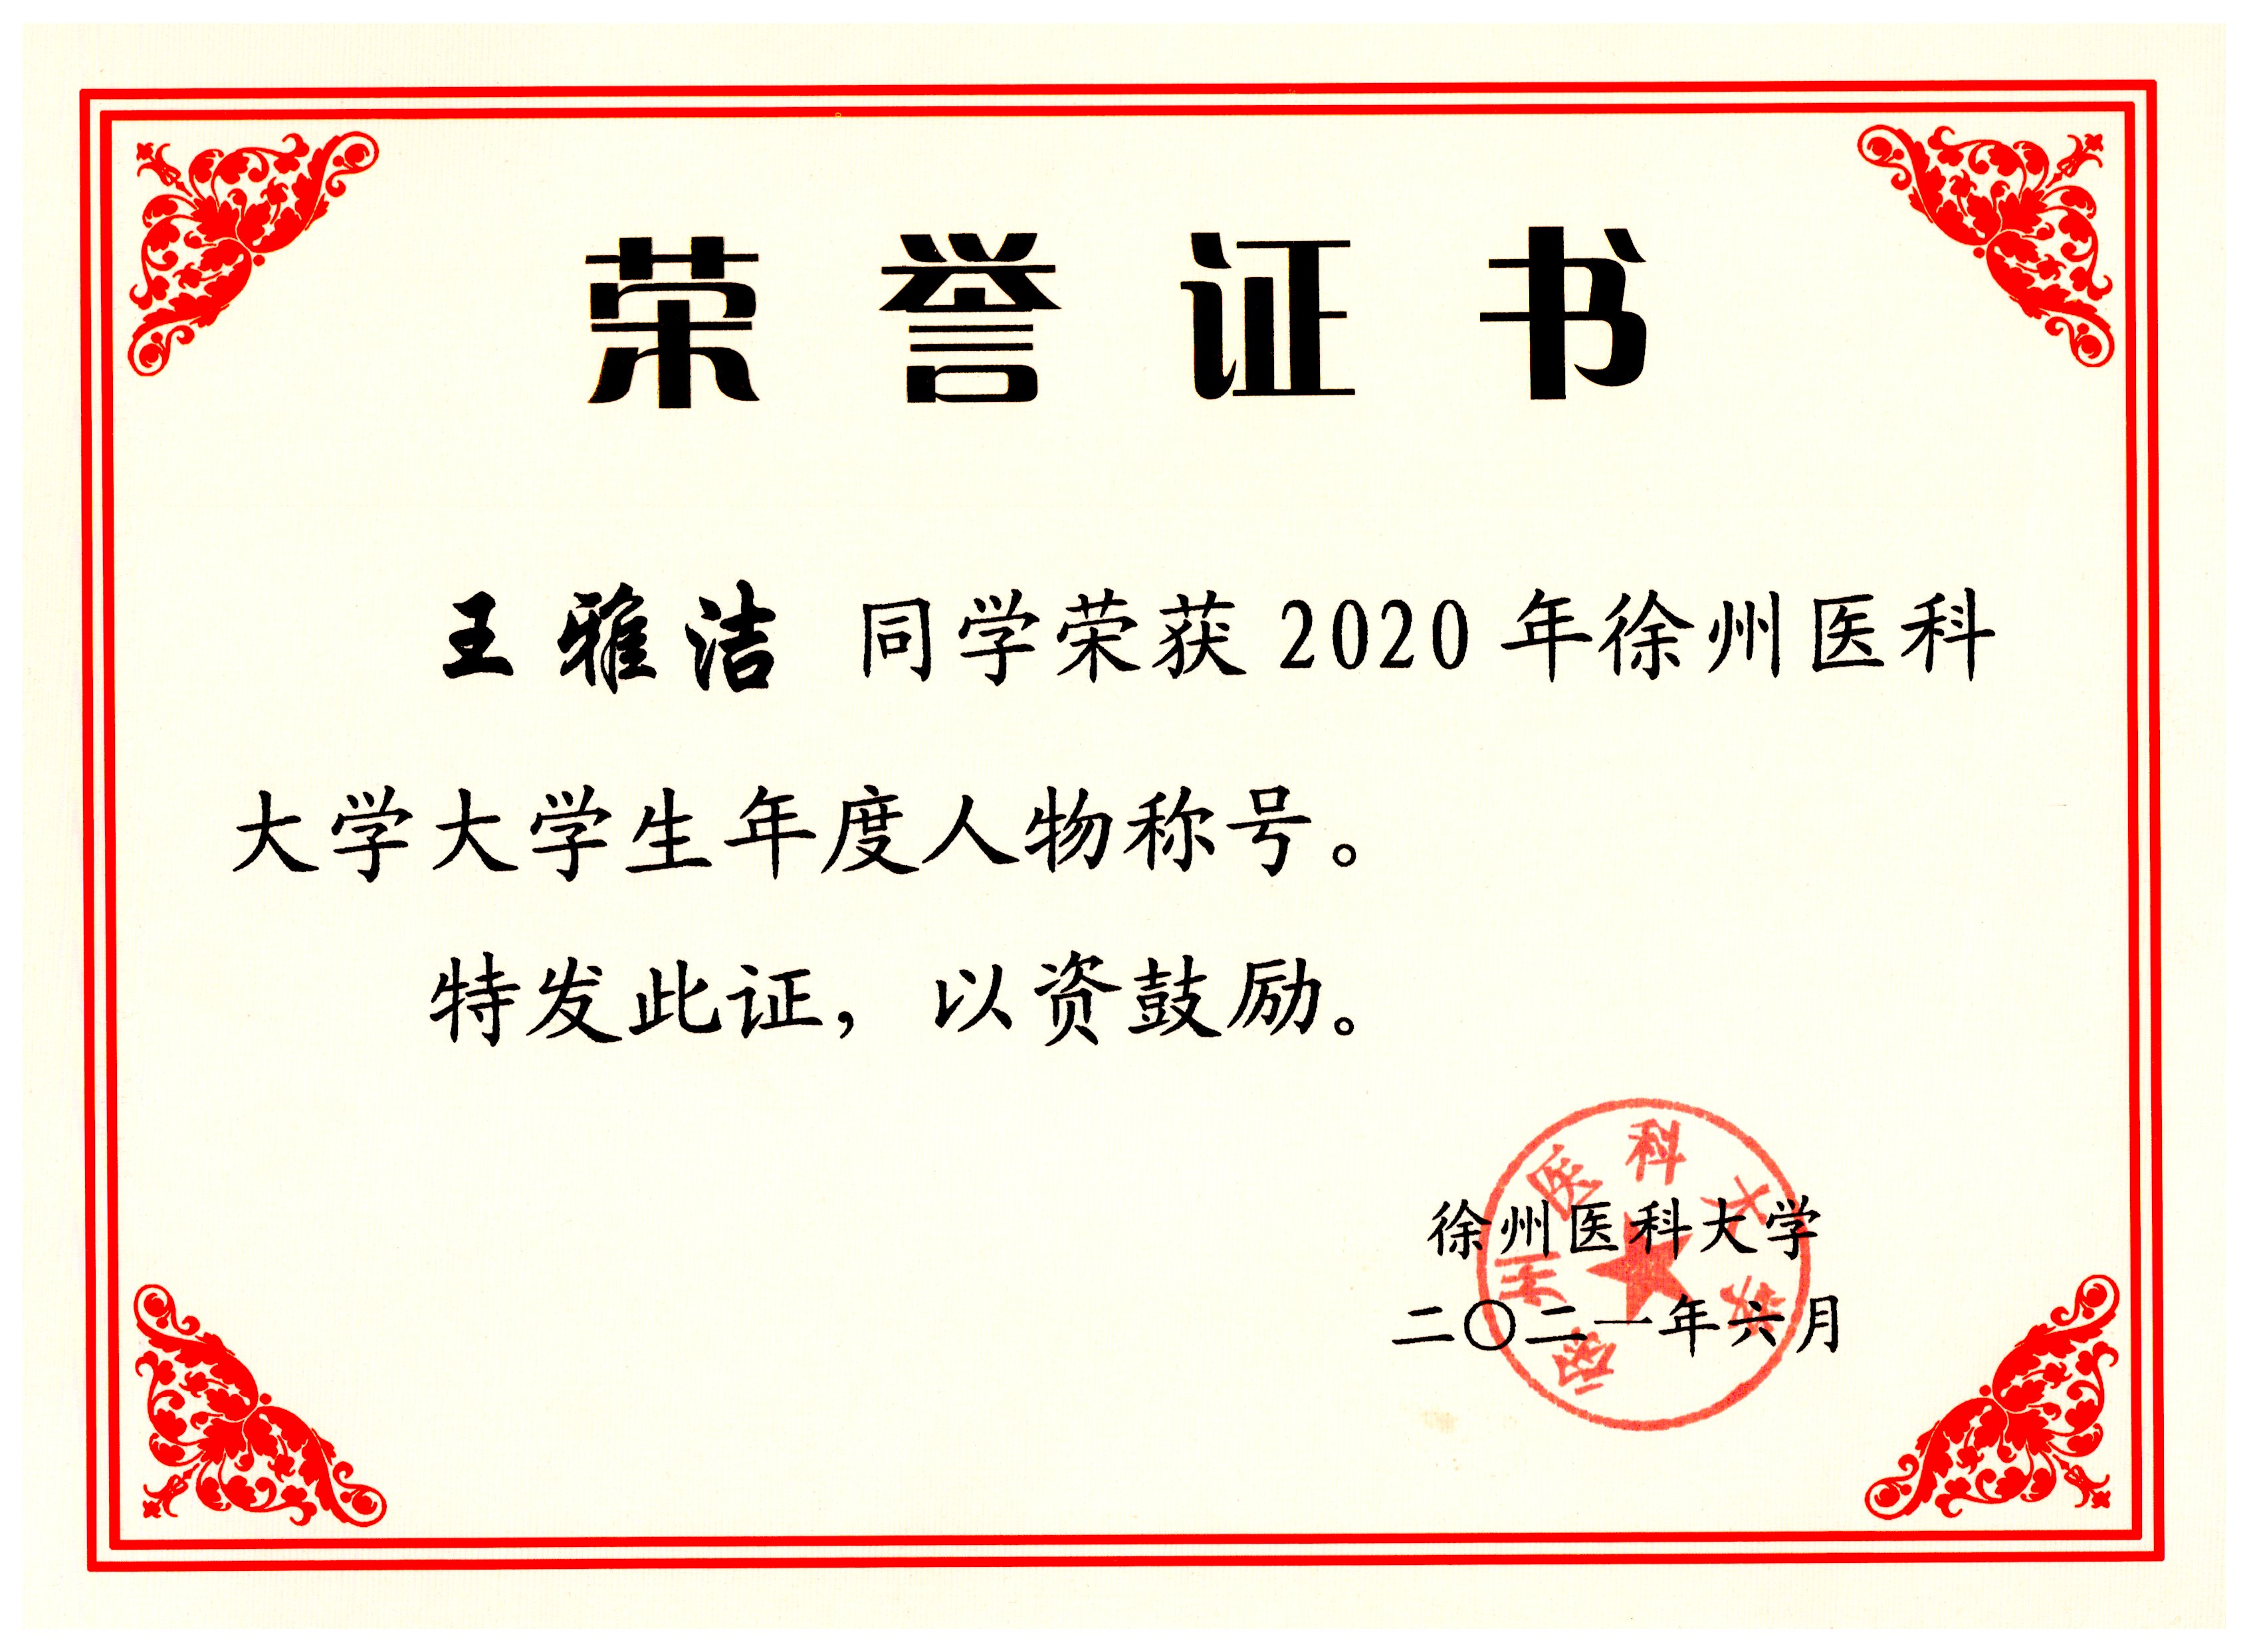 7【校级】2021.6 2020年徐州医科大学大学生年度人物.jpg